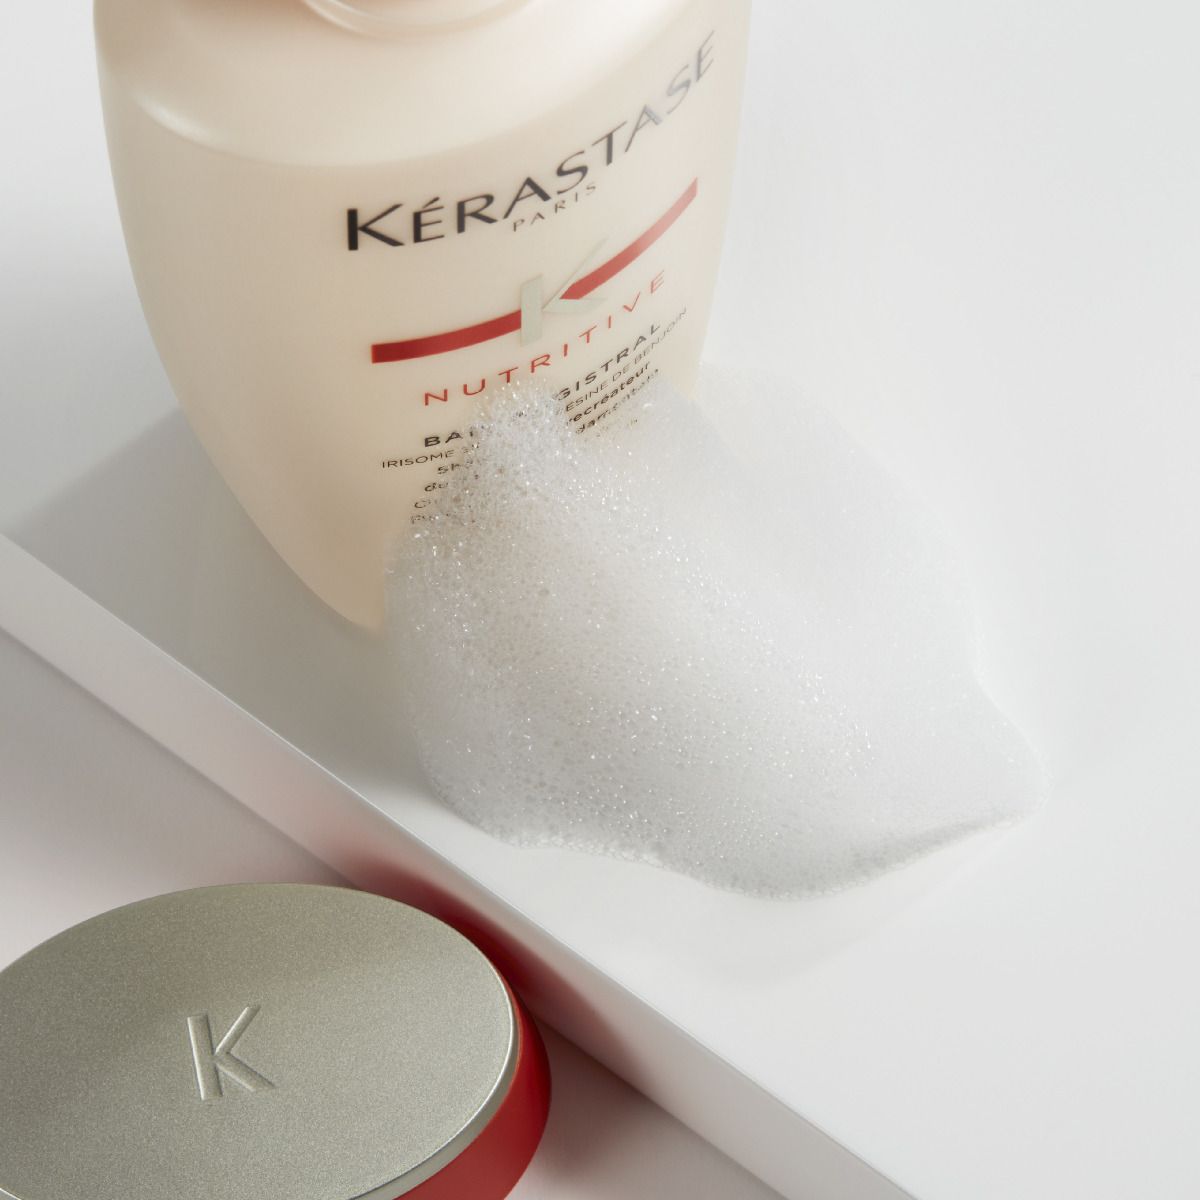 een productfoto van de kerastase nutritive shampoo met een beetje schuim erbij